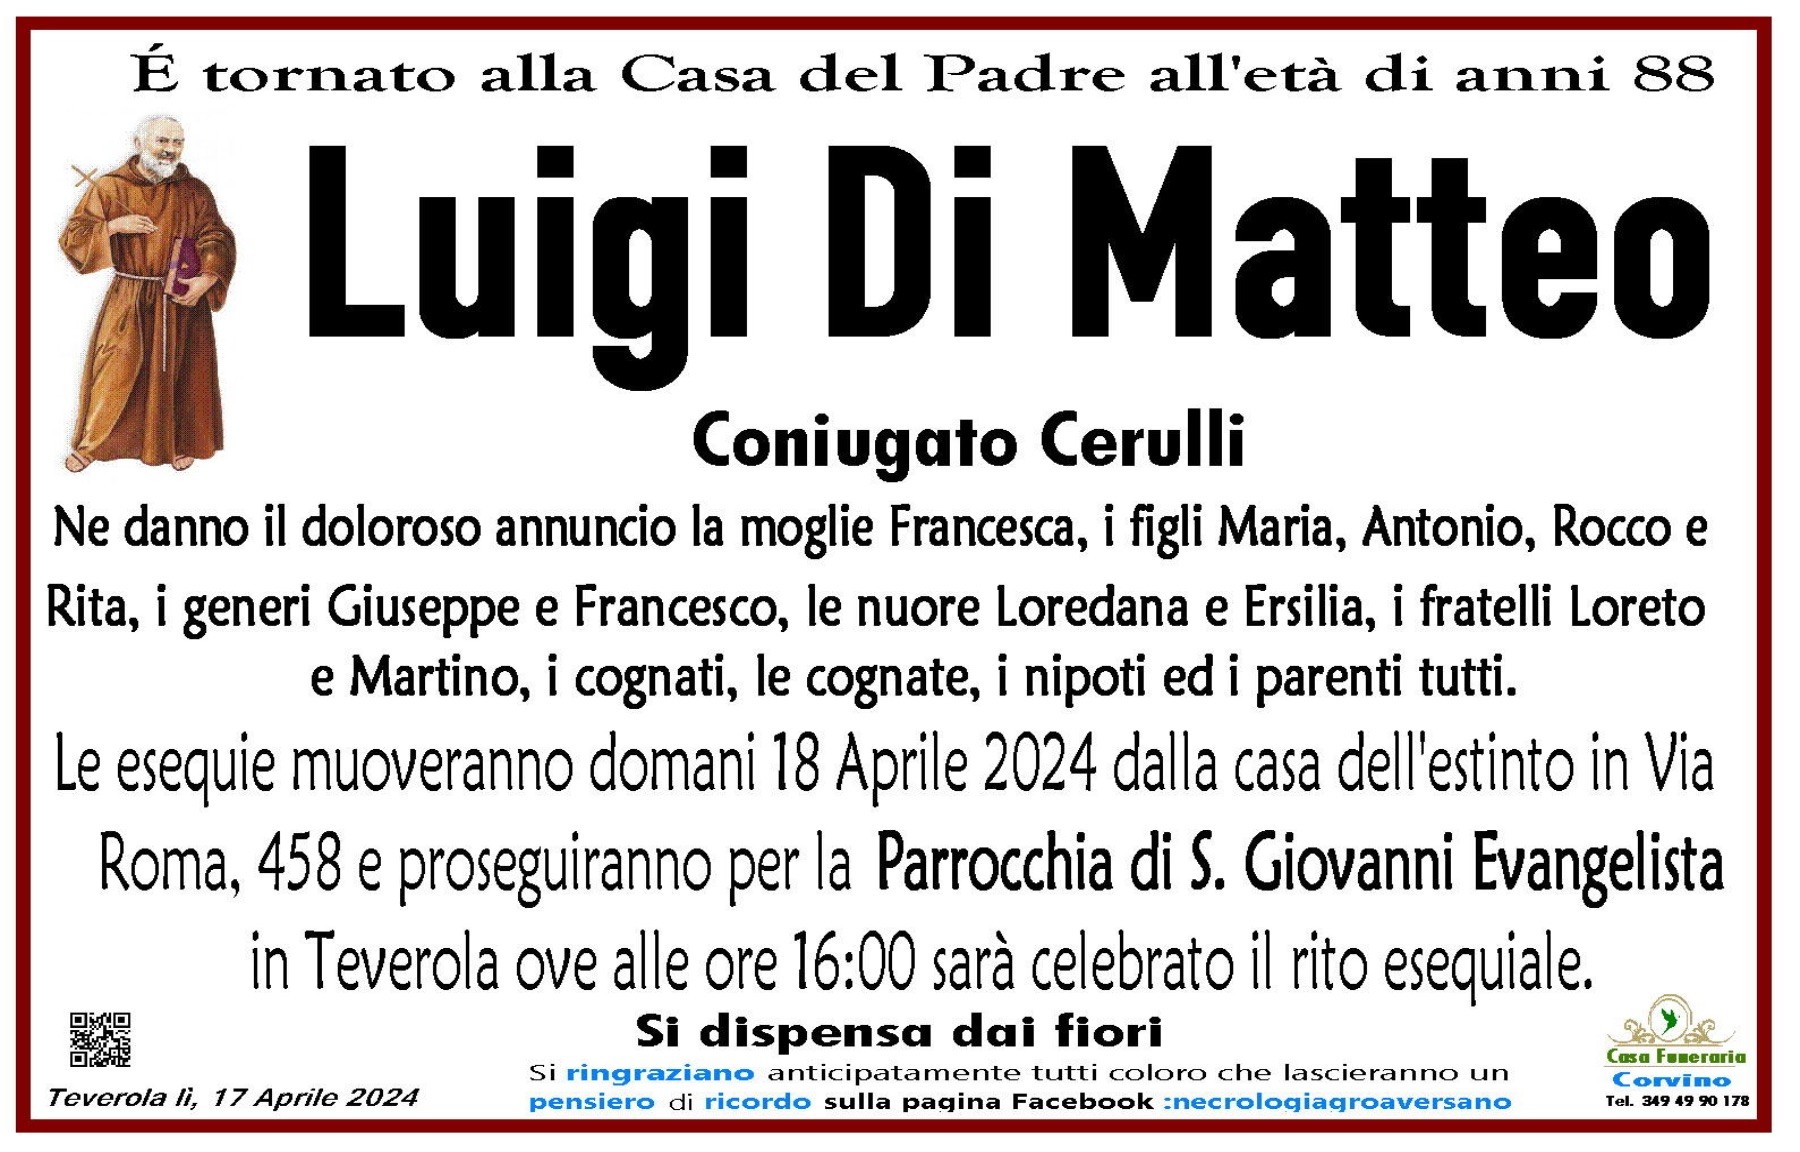 Luigi Di Matteo